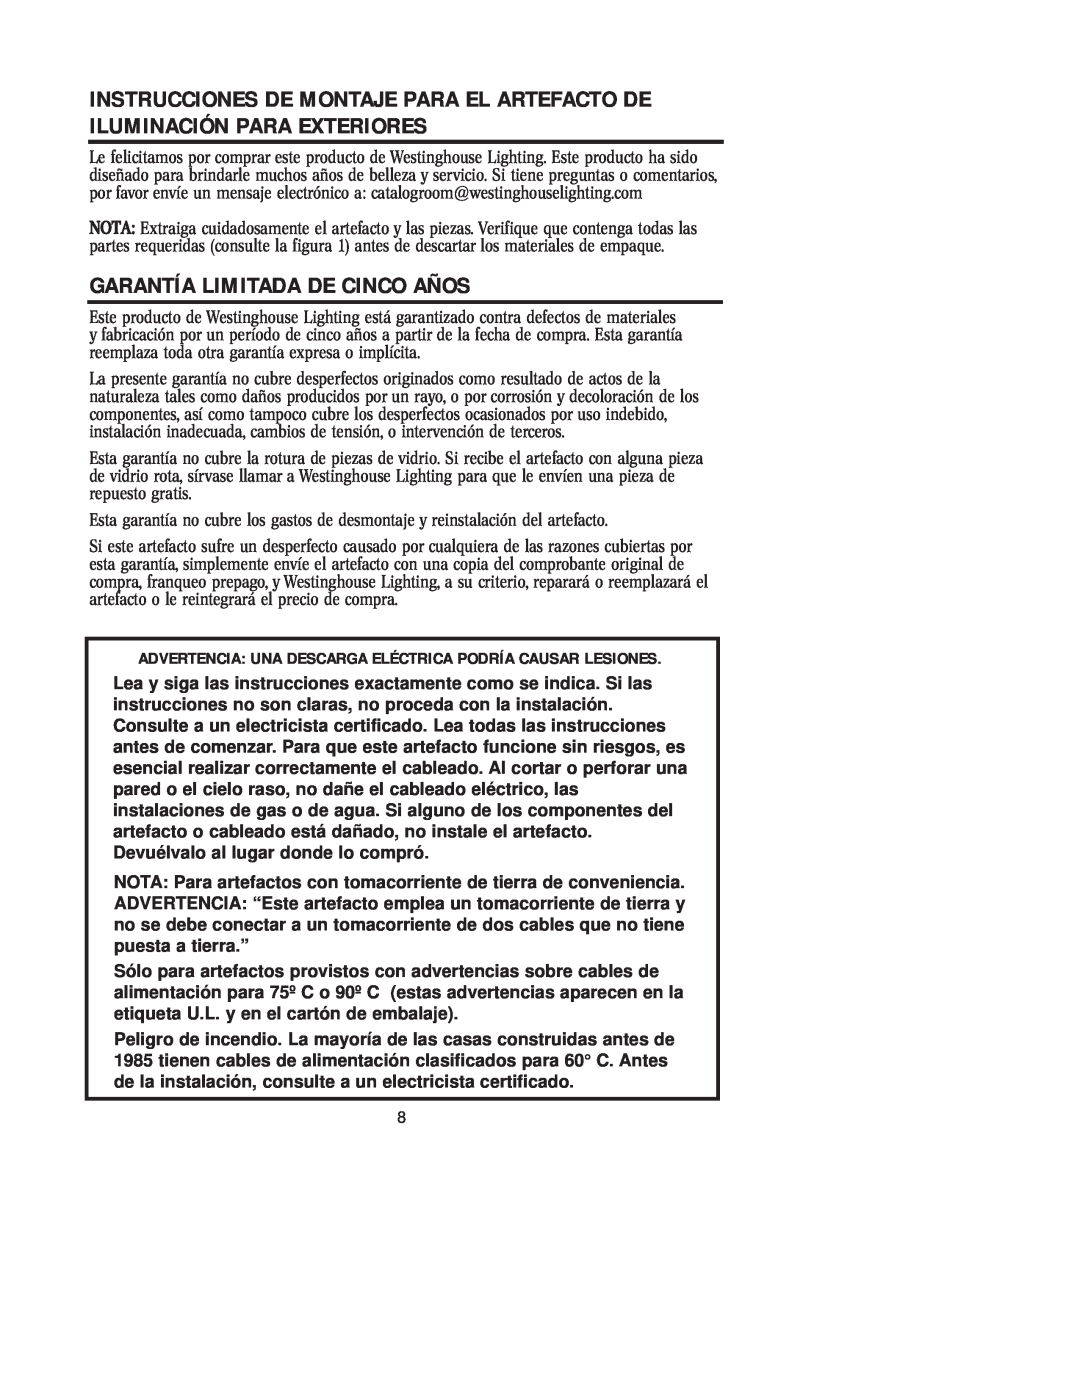 Westinghouse W-125 owner manual Garantía Limitada De Cinco Años 